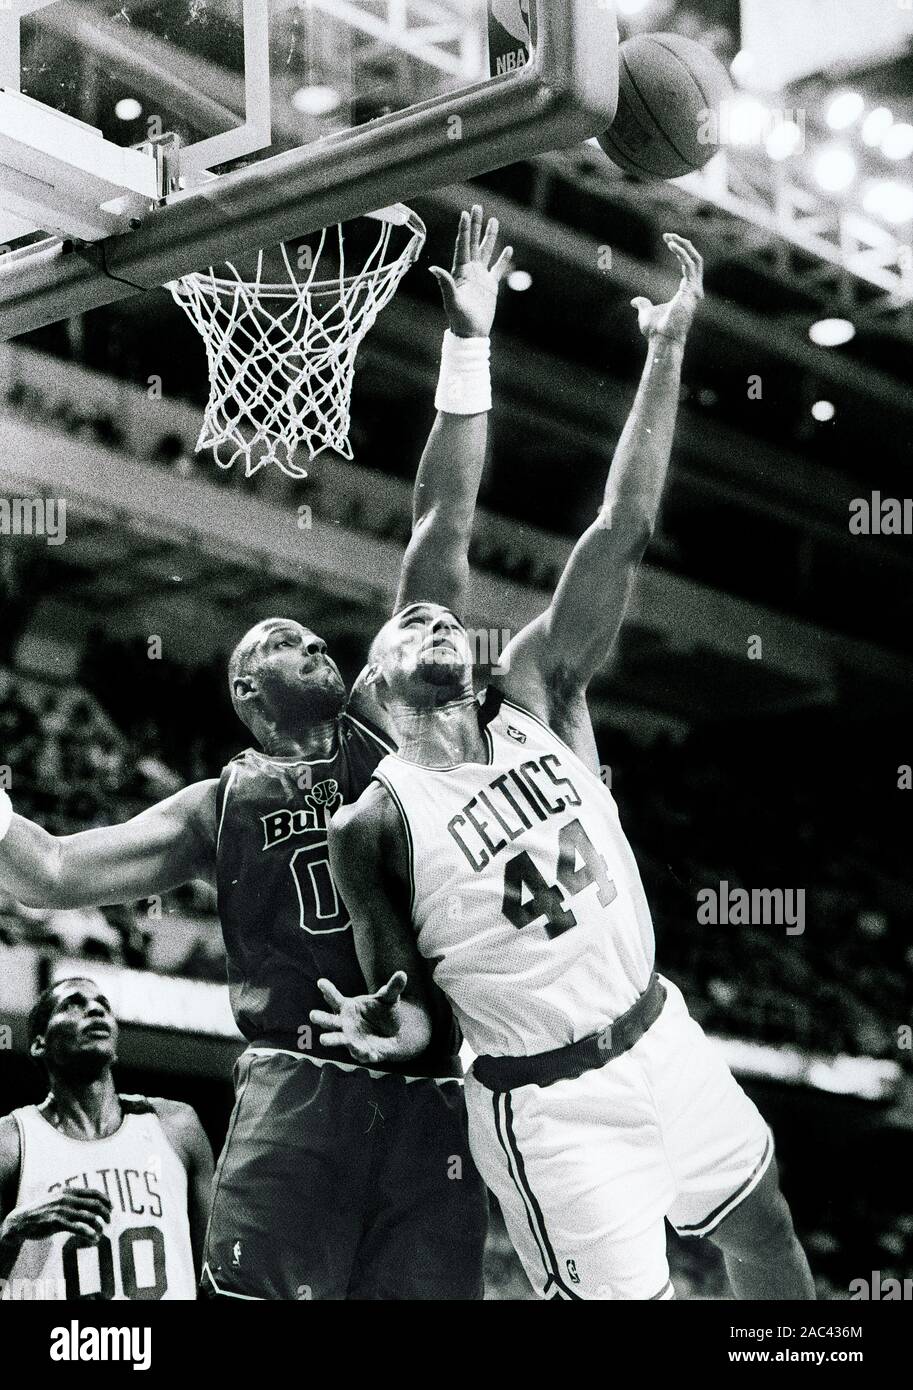 Boston Celtics #44 Rick Fox schießt auf Washington Bullets # 00 Kevin Duckworth im Basketball spiel action im Fleet Center in Boston, MA, April 1, 1994 Foto von Bill Belknap Stockfoto